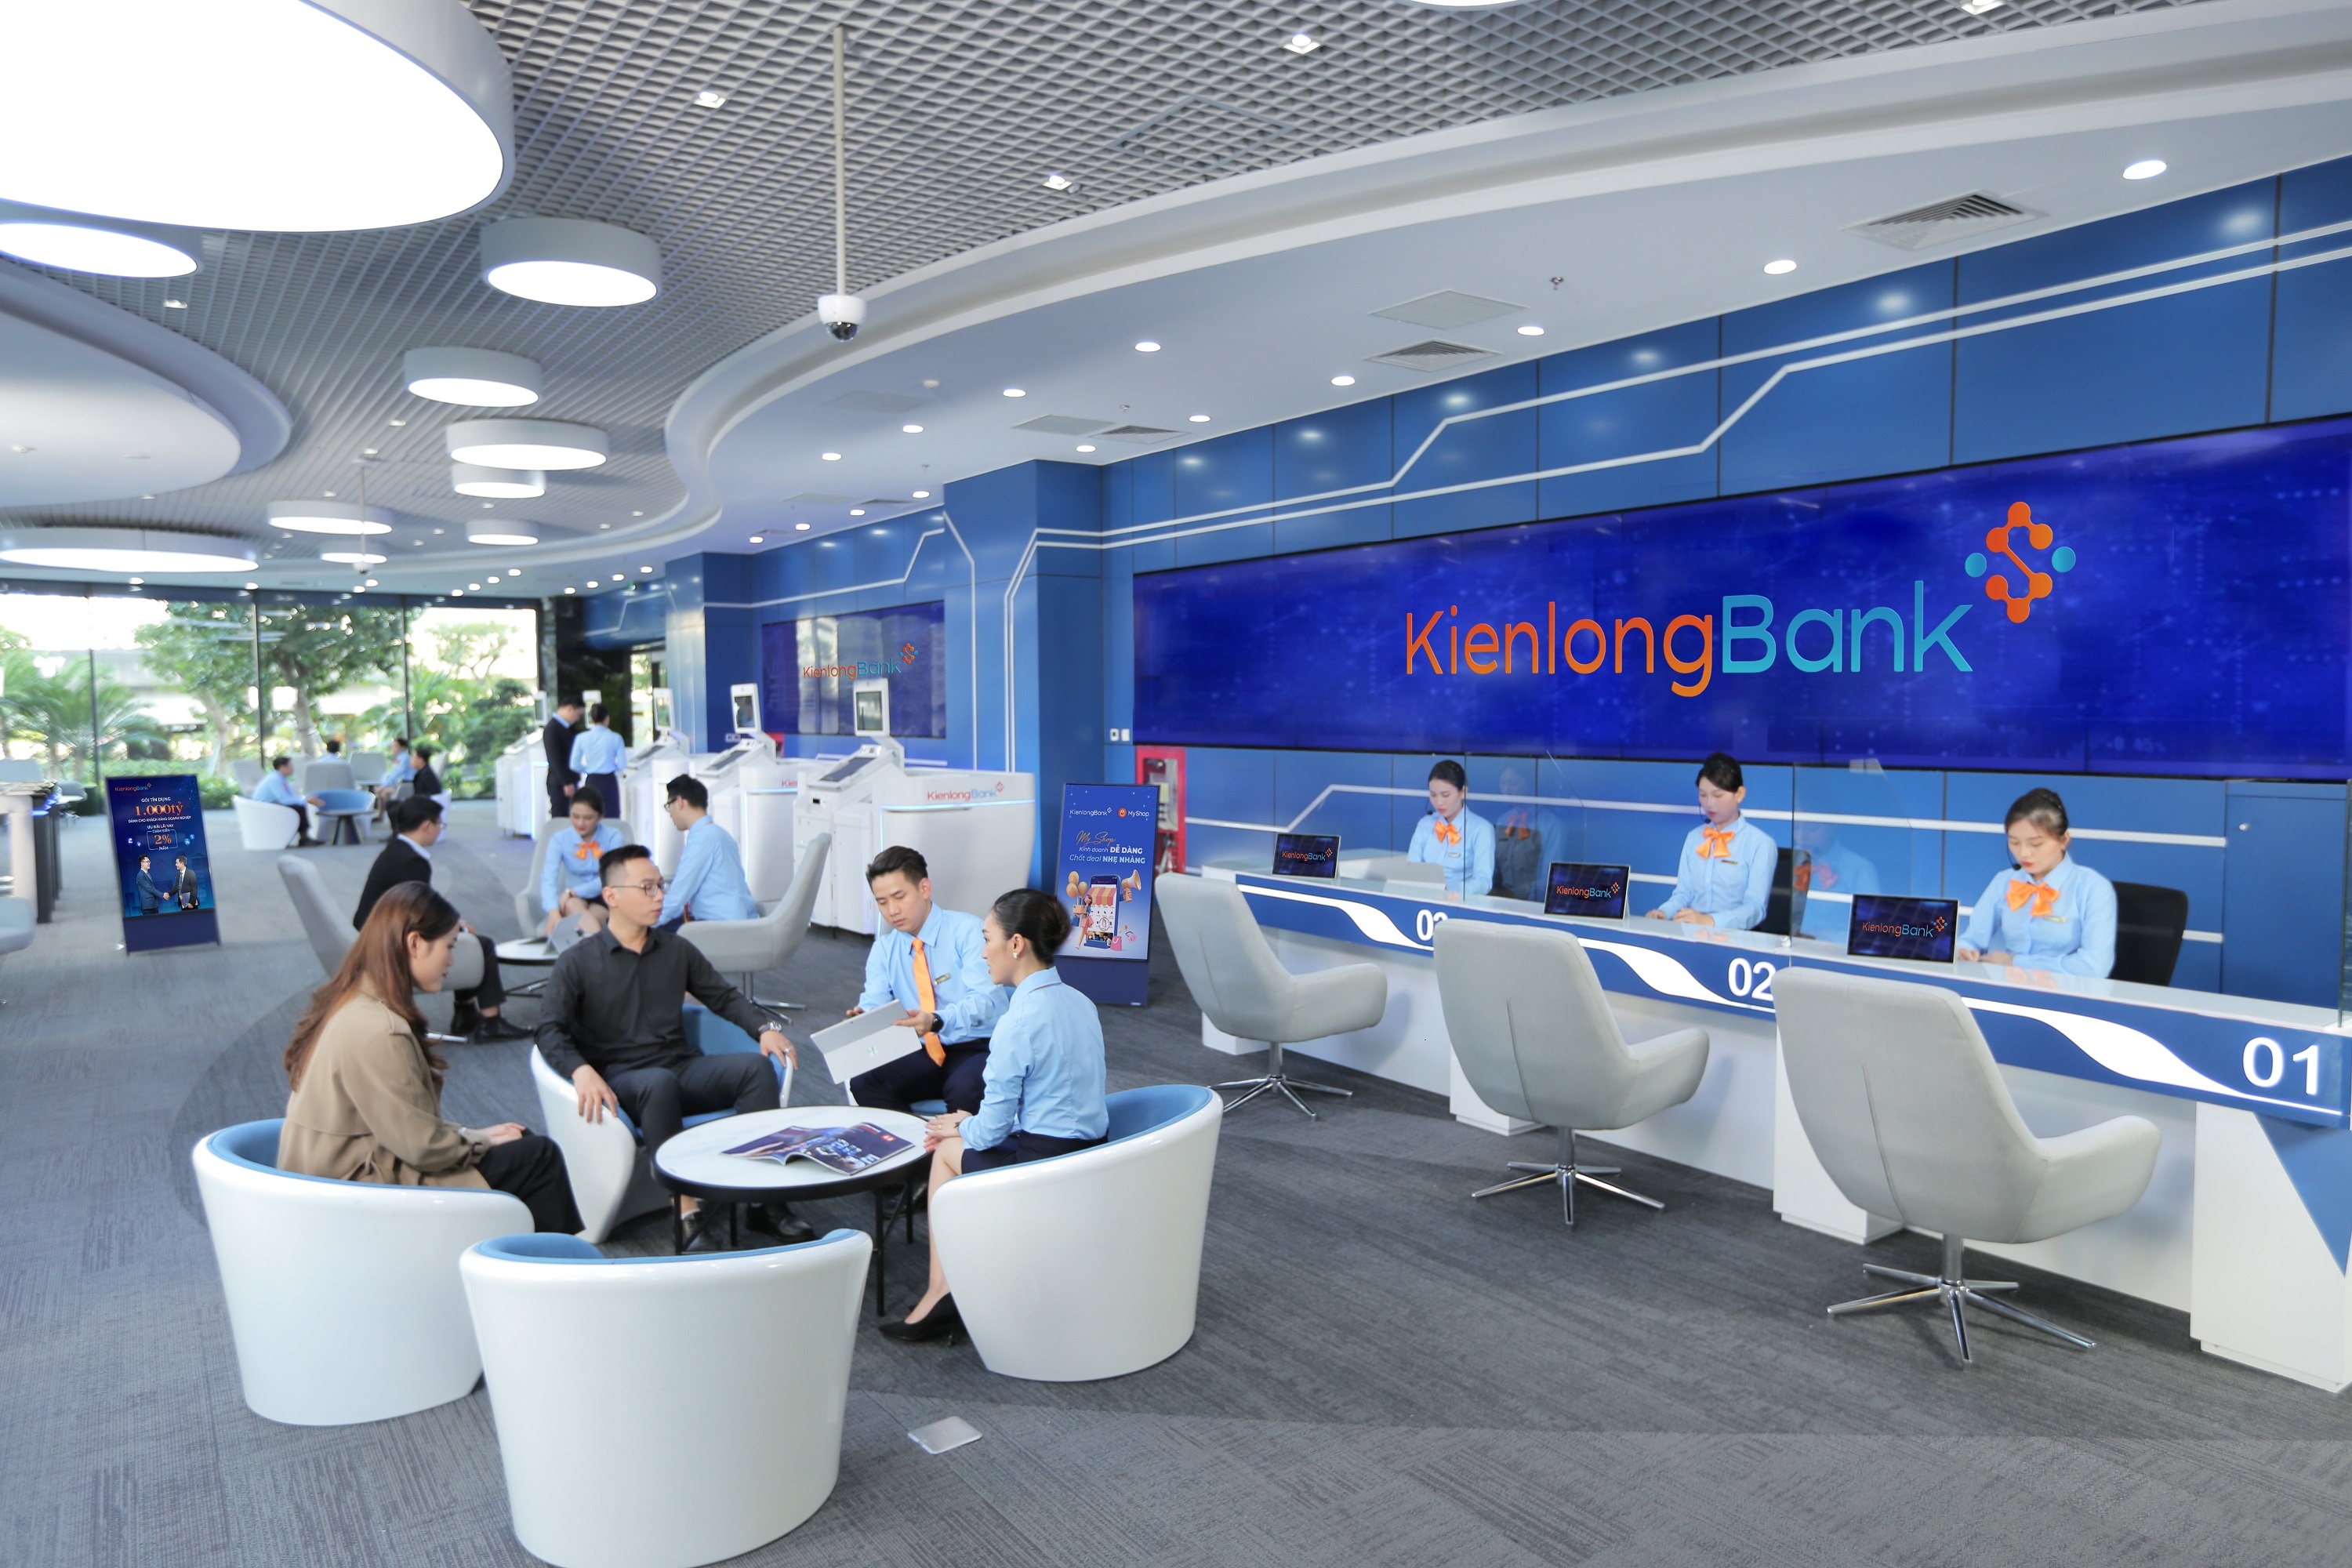 Với mức lãi suất ưu đãi mới, KienlongBank kỳ vọng hỗ trợ khách hàng bổ sung vốn lưu động, tạo điều kiện mở rộng sản xuất kinh doanh, đẩy mạnh năng lực cạnh tranh những tháng cuối năm